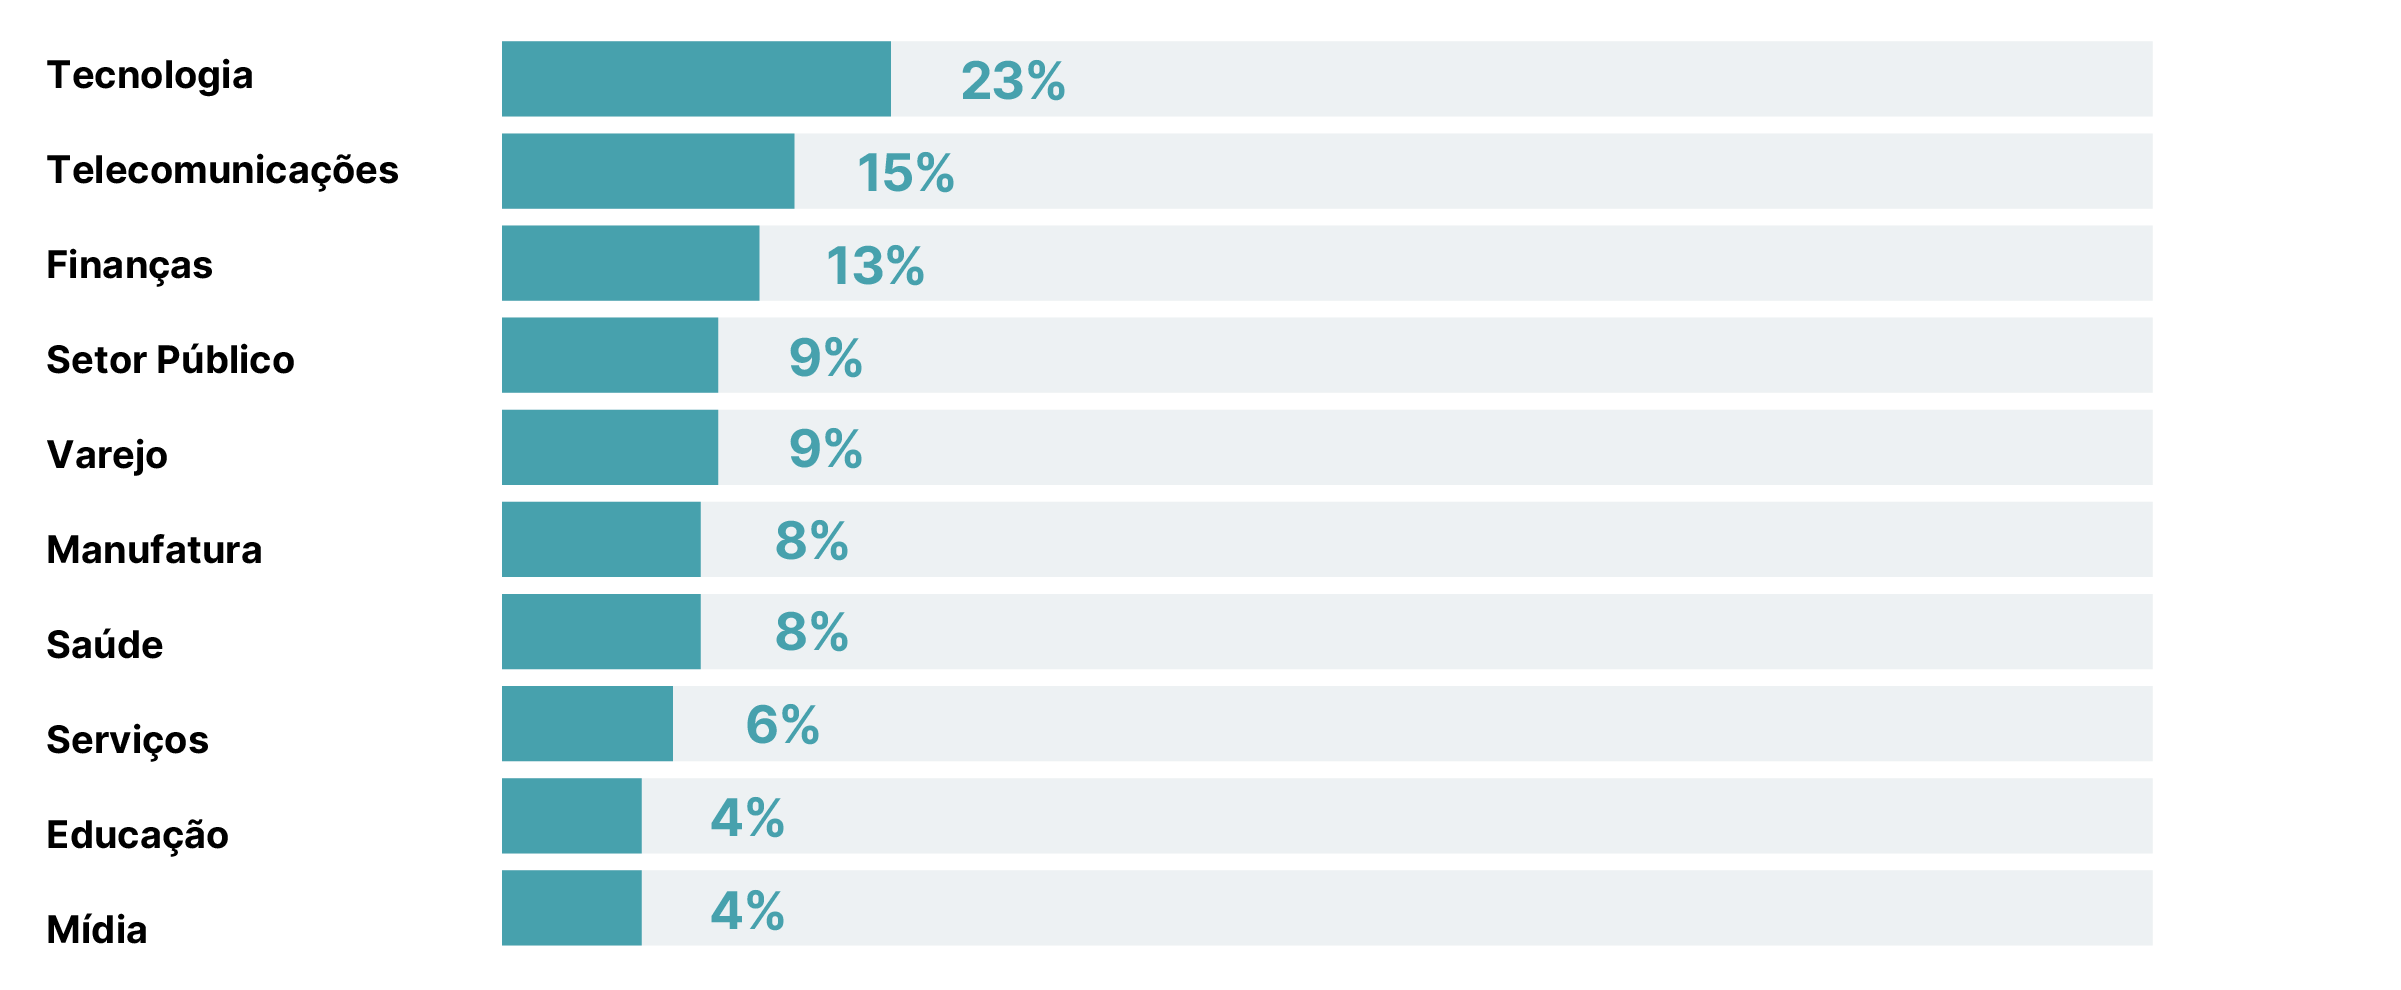 Um gráfico de barras horizontal mostrando invasões interativas por indústria. 23% em tecnologia, 15% em telecomunicações, 13% em finanças, 9% em governo, 9% no varejo, 8% em manufatura, 8% em saúde, 6% em serviços, 4% em educação e 4% em mídia. 